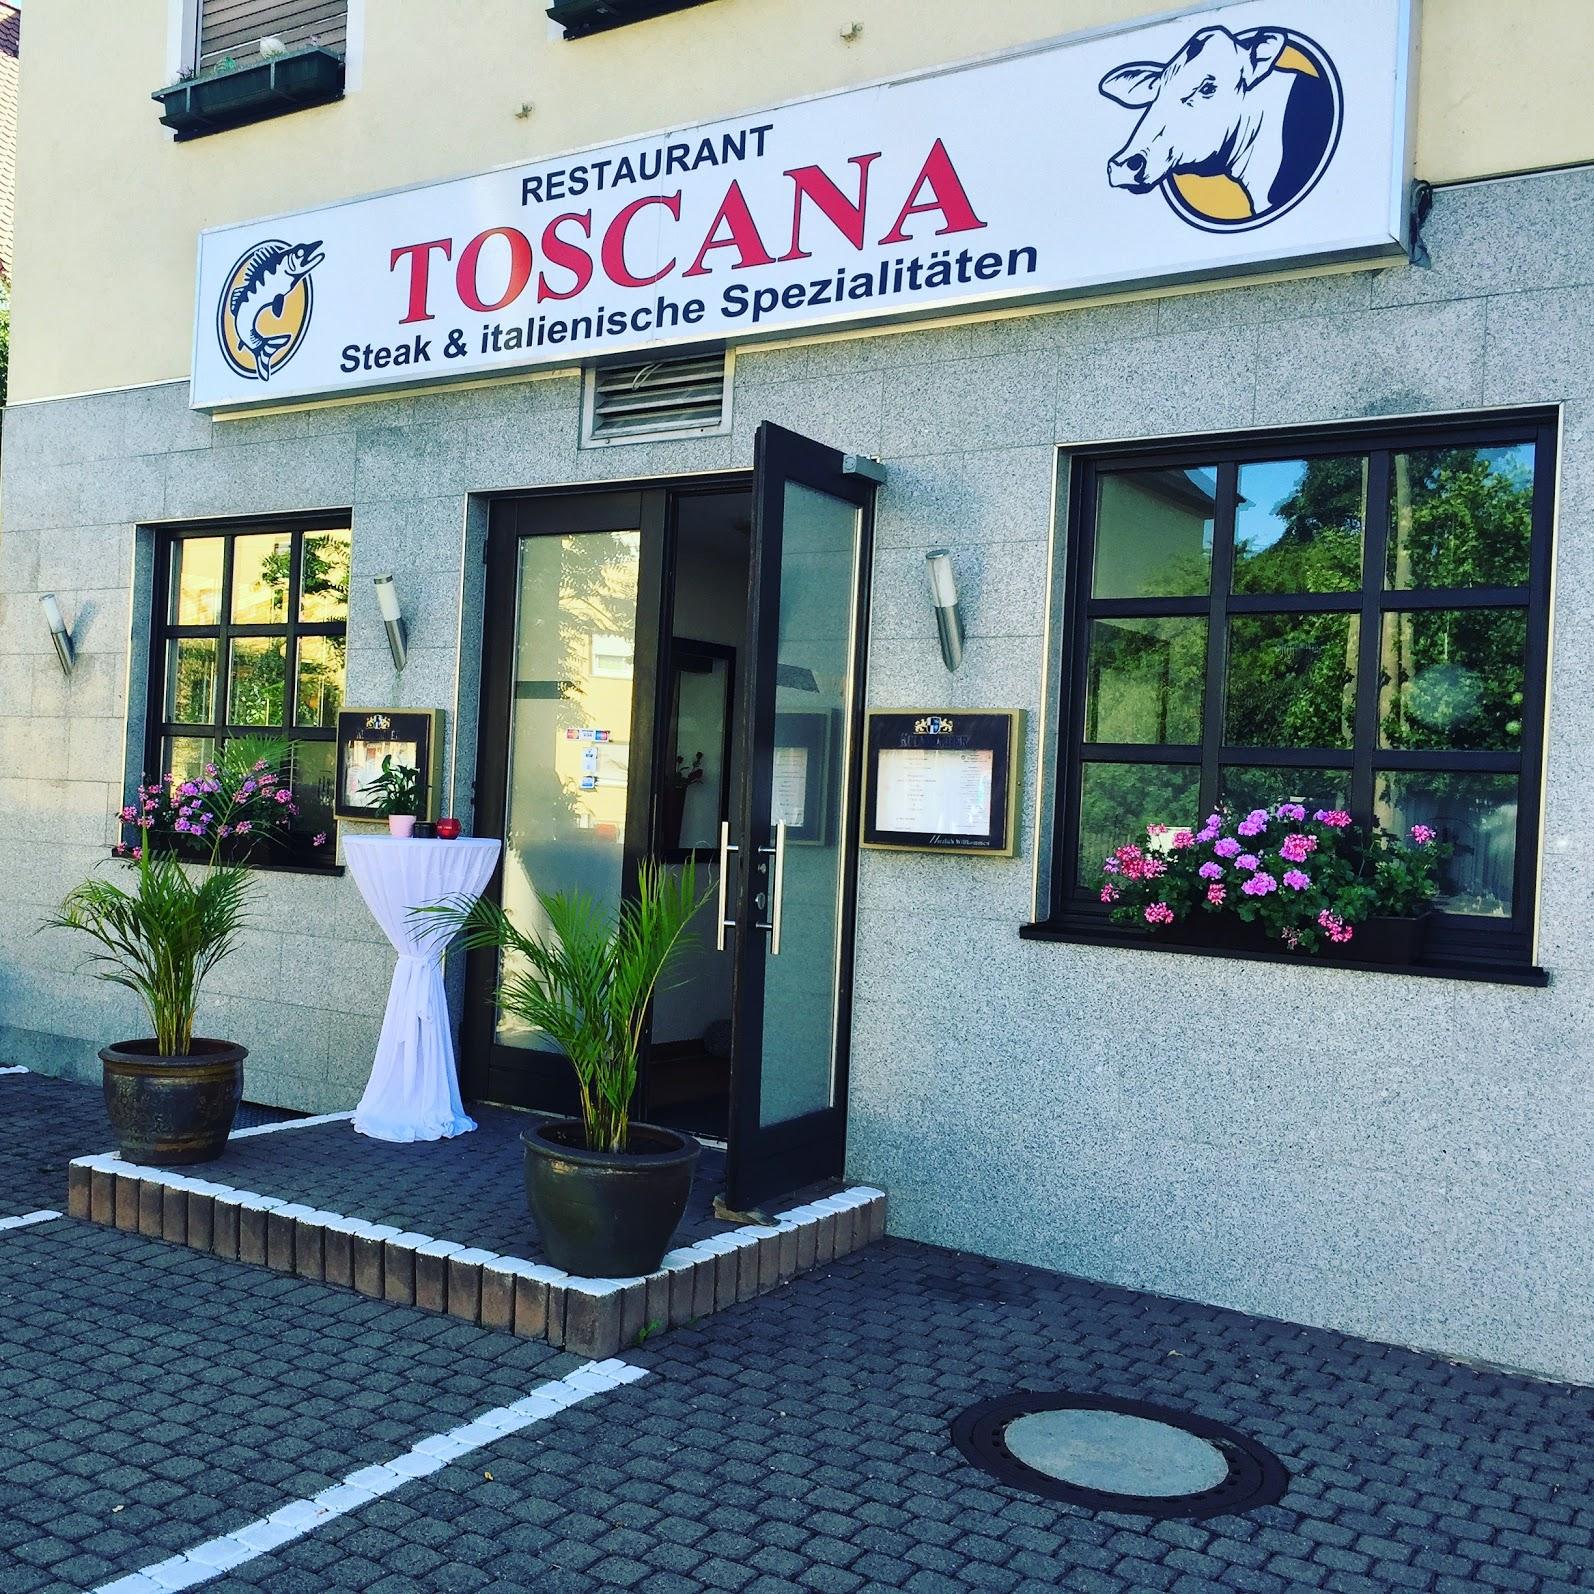 Restaurant "Toscana" in Fürth